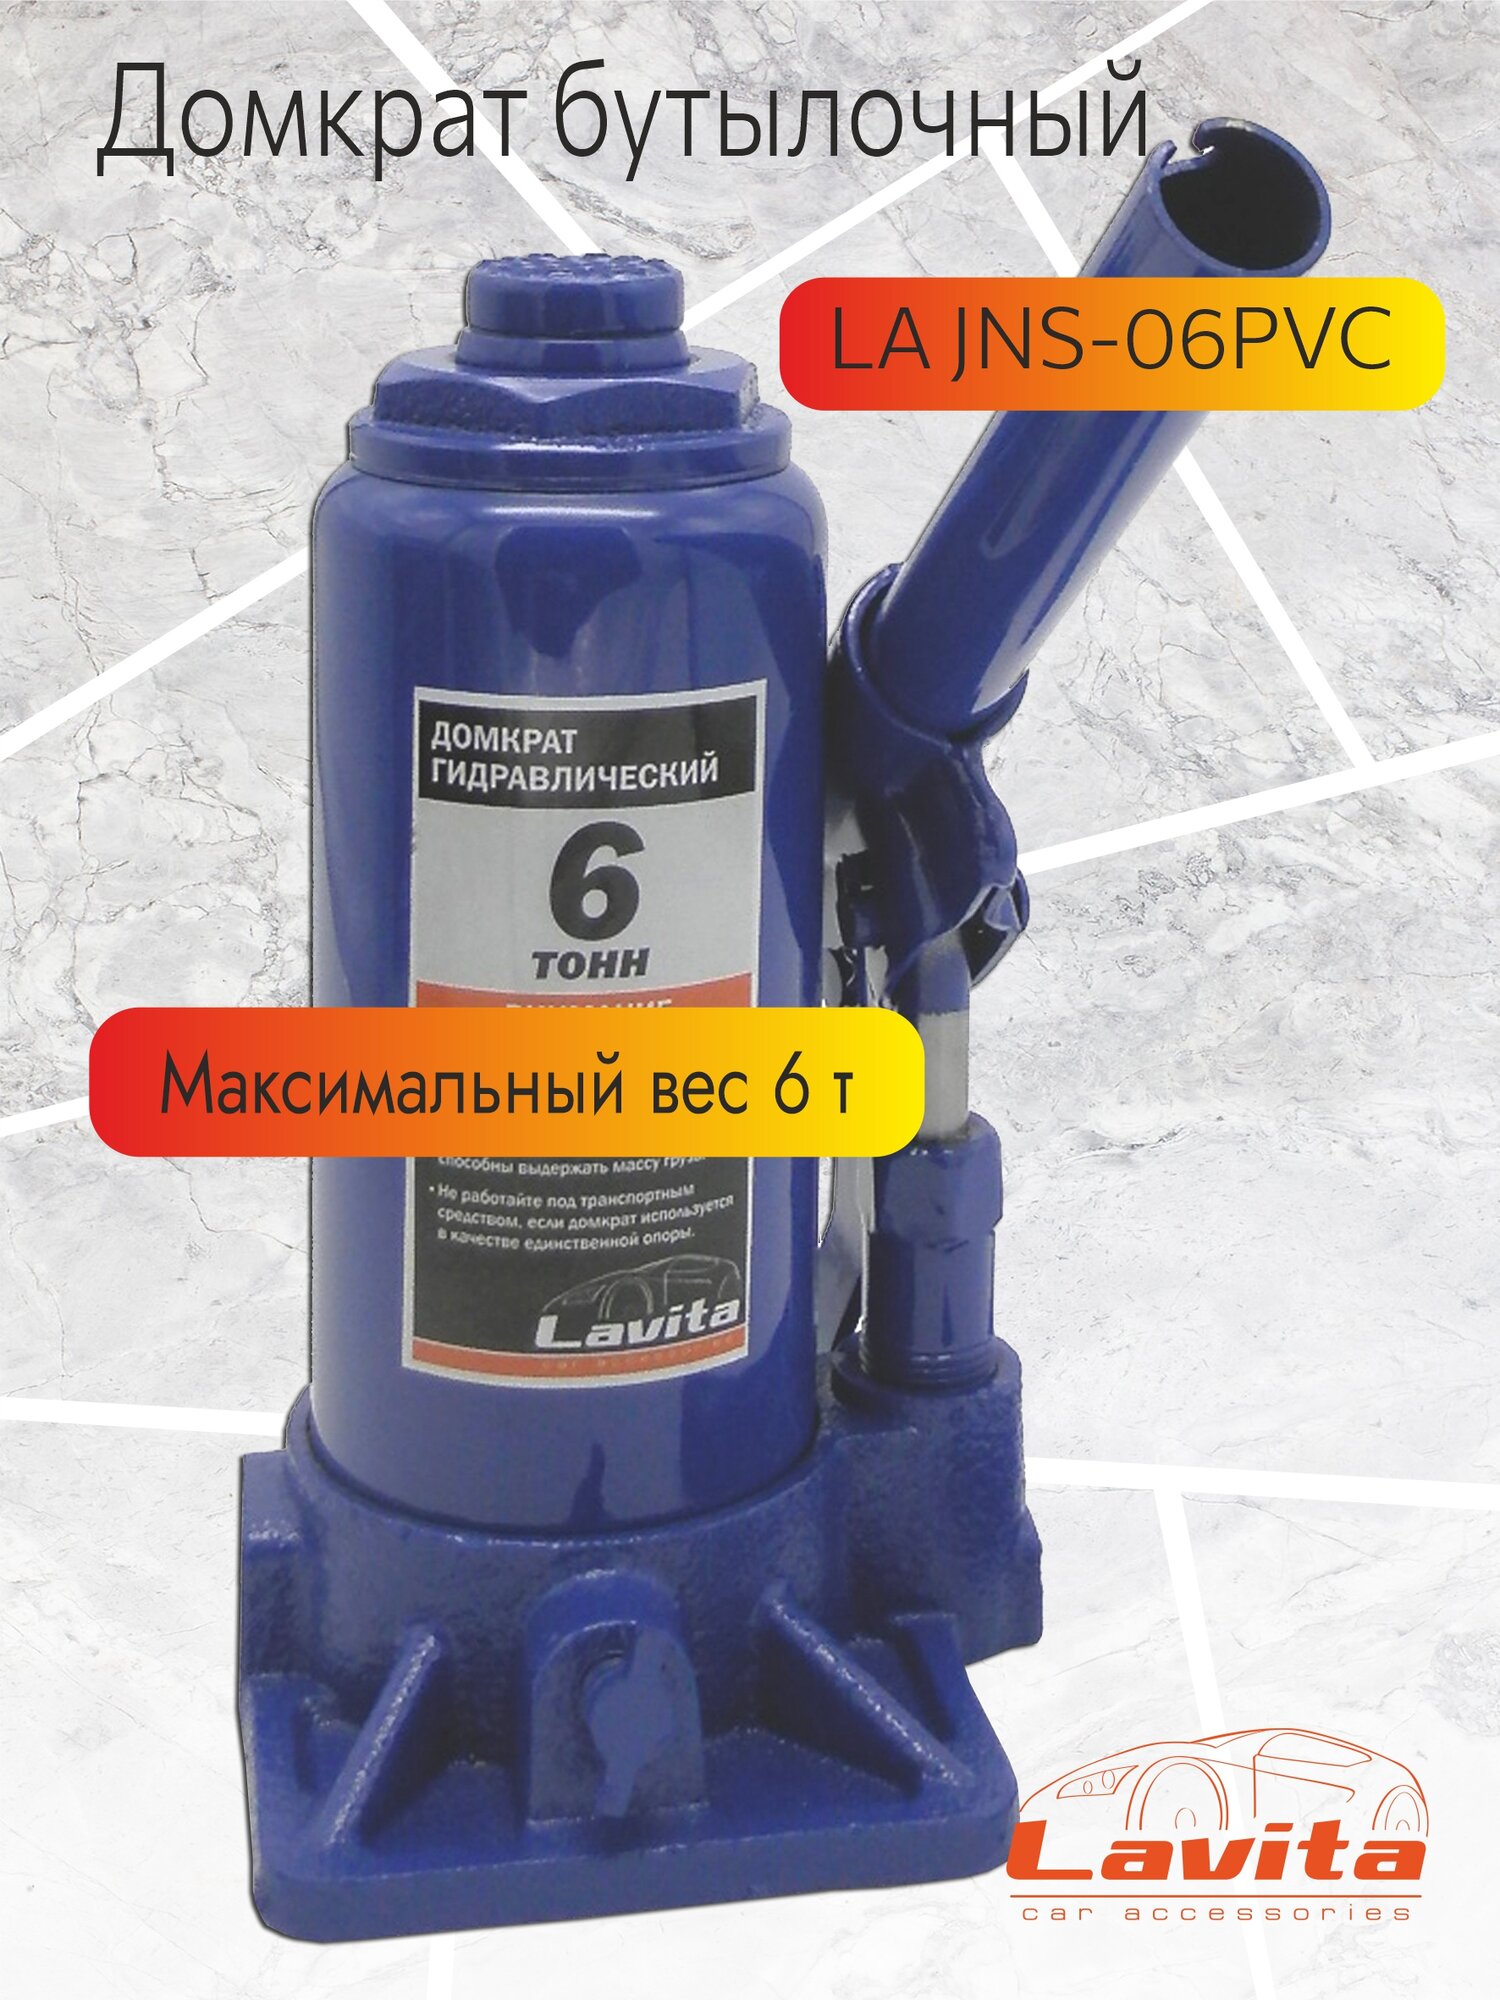 Домкрат бутылочный гидравлический LAVITA, LA JNS-06PVC, 6Т; Min:200-Max:385; Пластиковый кейс